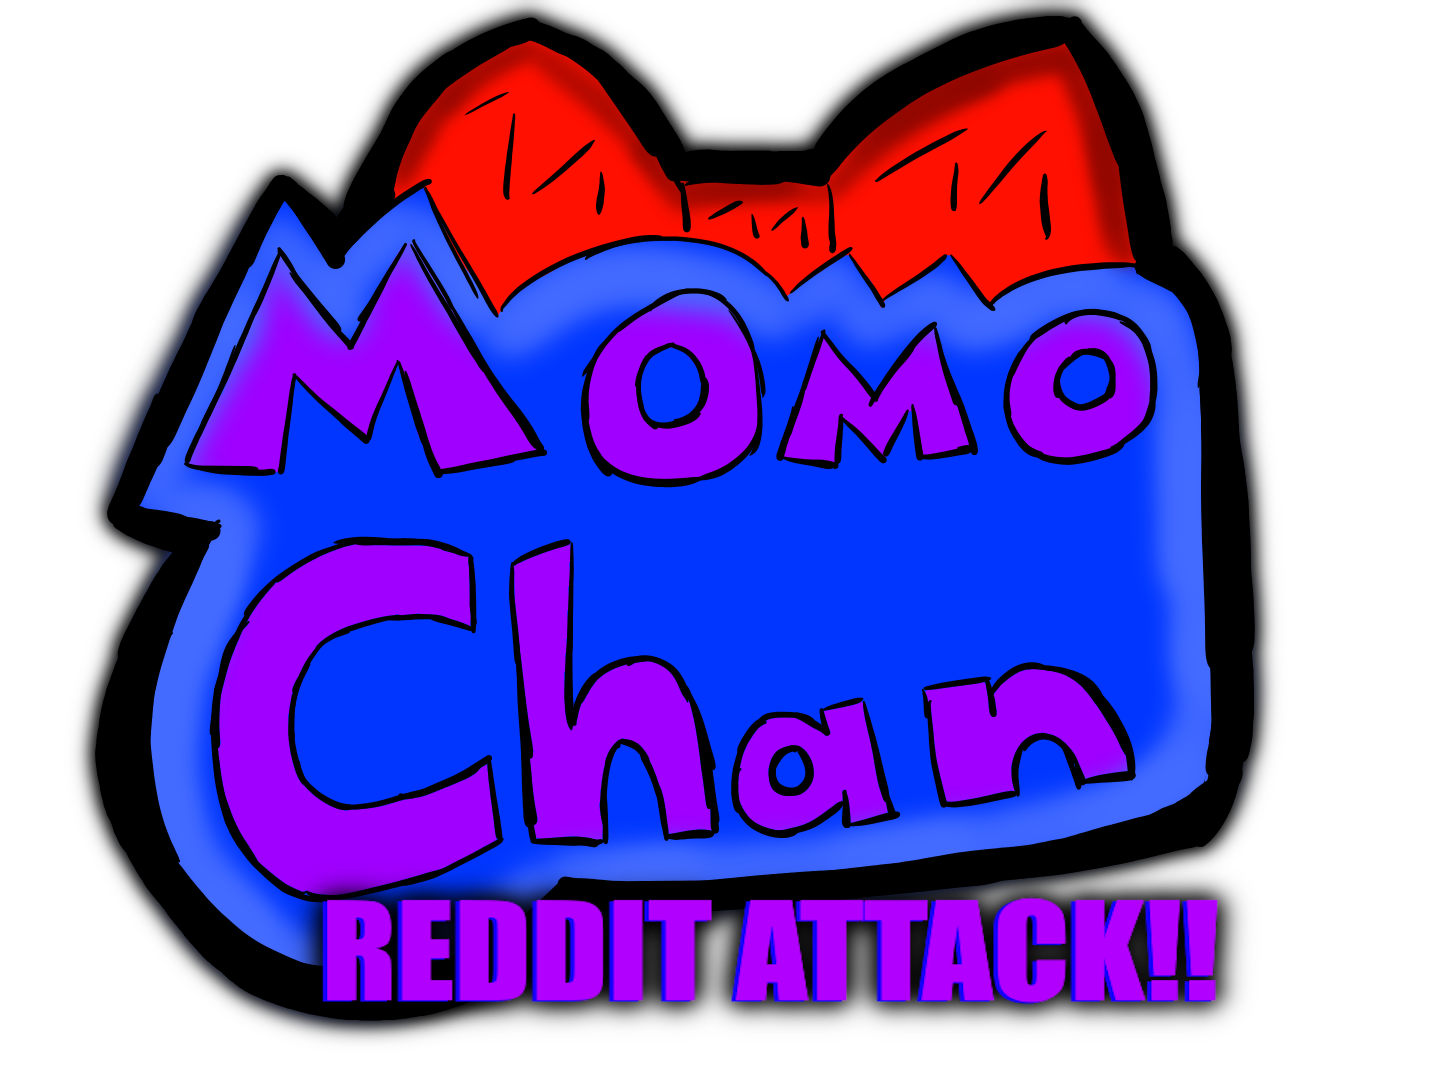 Momo-Chan Reddit Attack!! [Alpha V2.0]